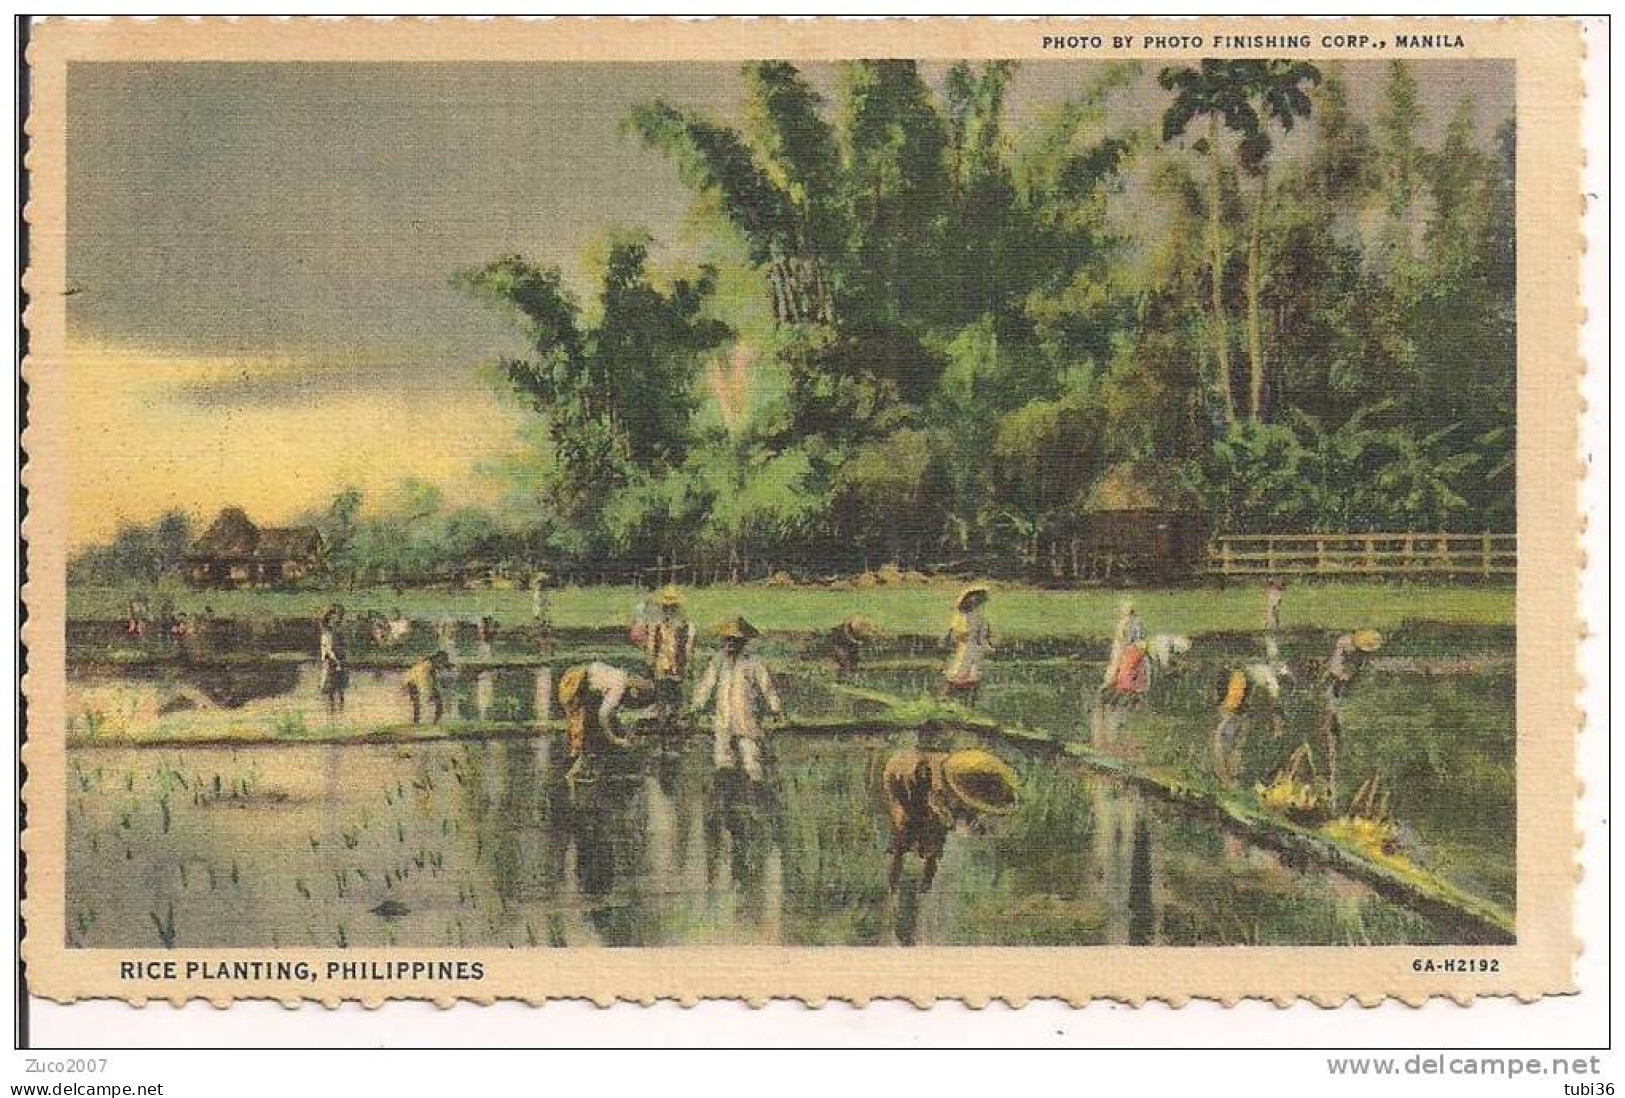 PHILIPPINES, RICE PLANTING, COLORI VIAGGIATA IN BUSTA 1950, FORMATO PICCOLO 9 X 14, - Philippines